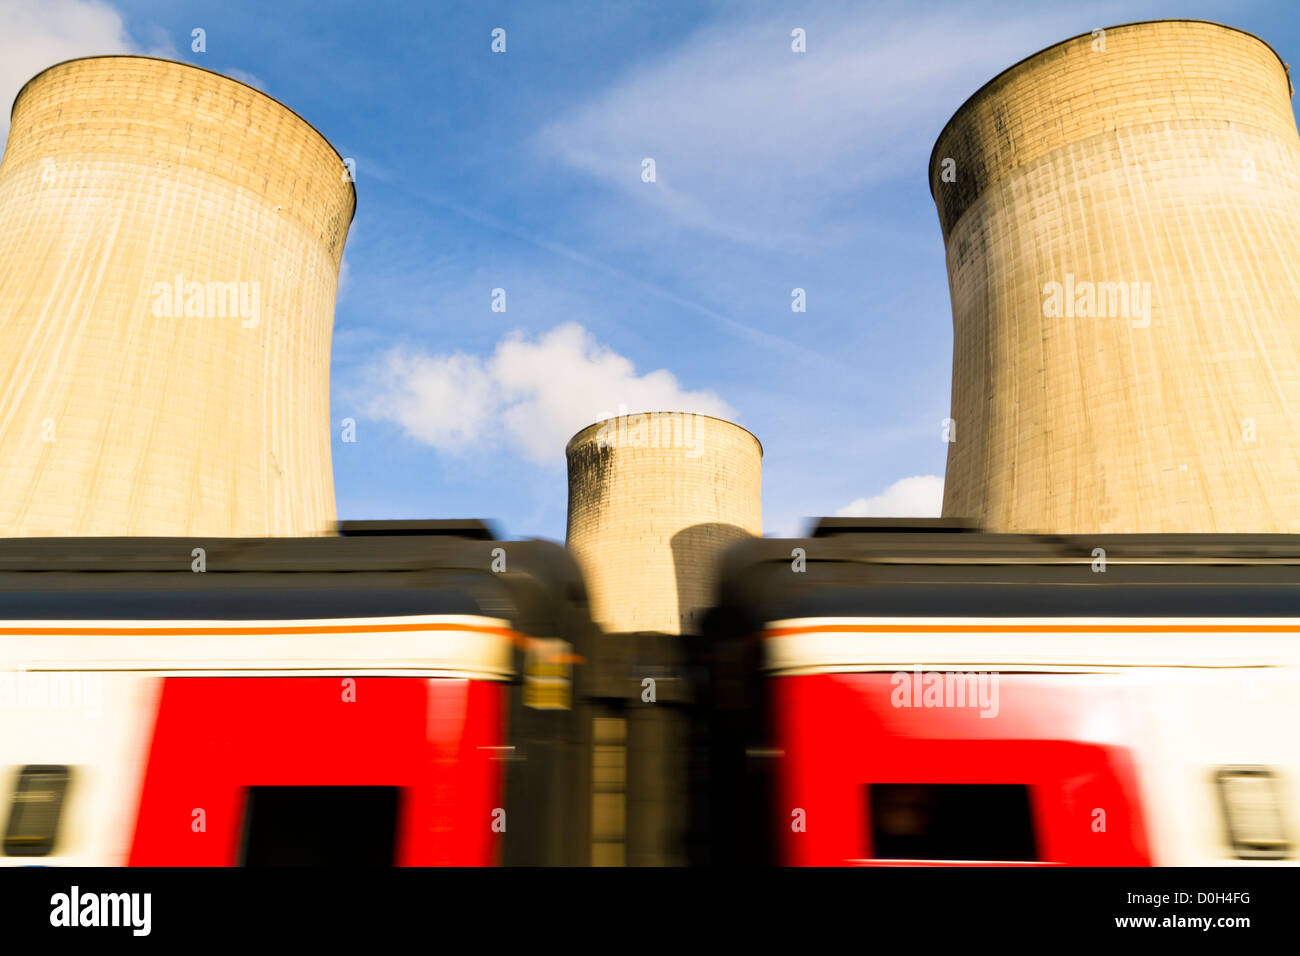 L'énergie et de l'industrie du transport ferroviaire. Tvh Fast train Ratcliffe power station Soar sur les tours de refroidissement, Lancashire, England, UK Banque D'Images